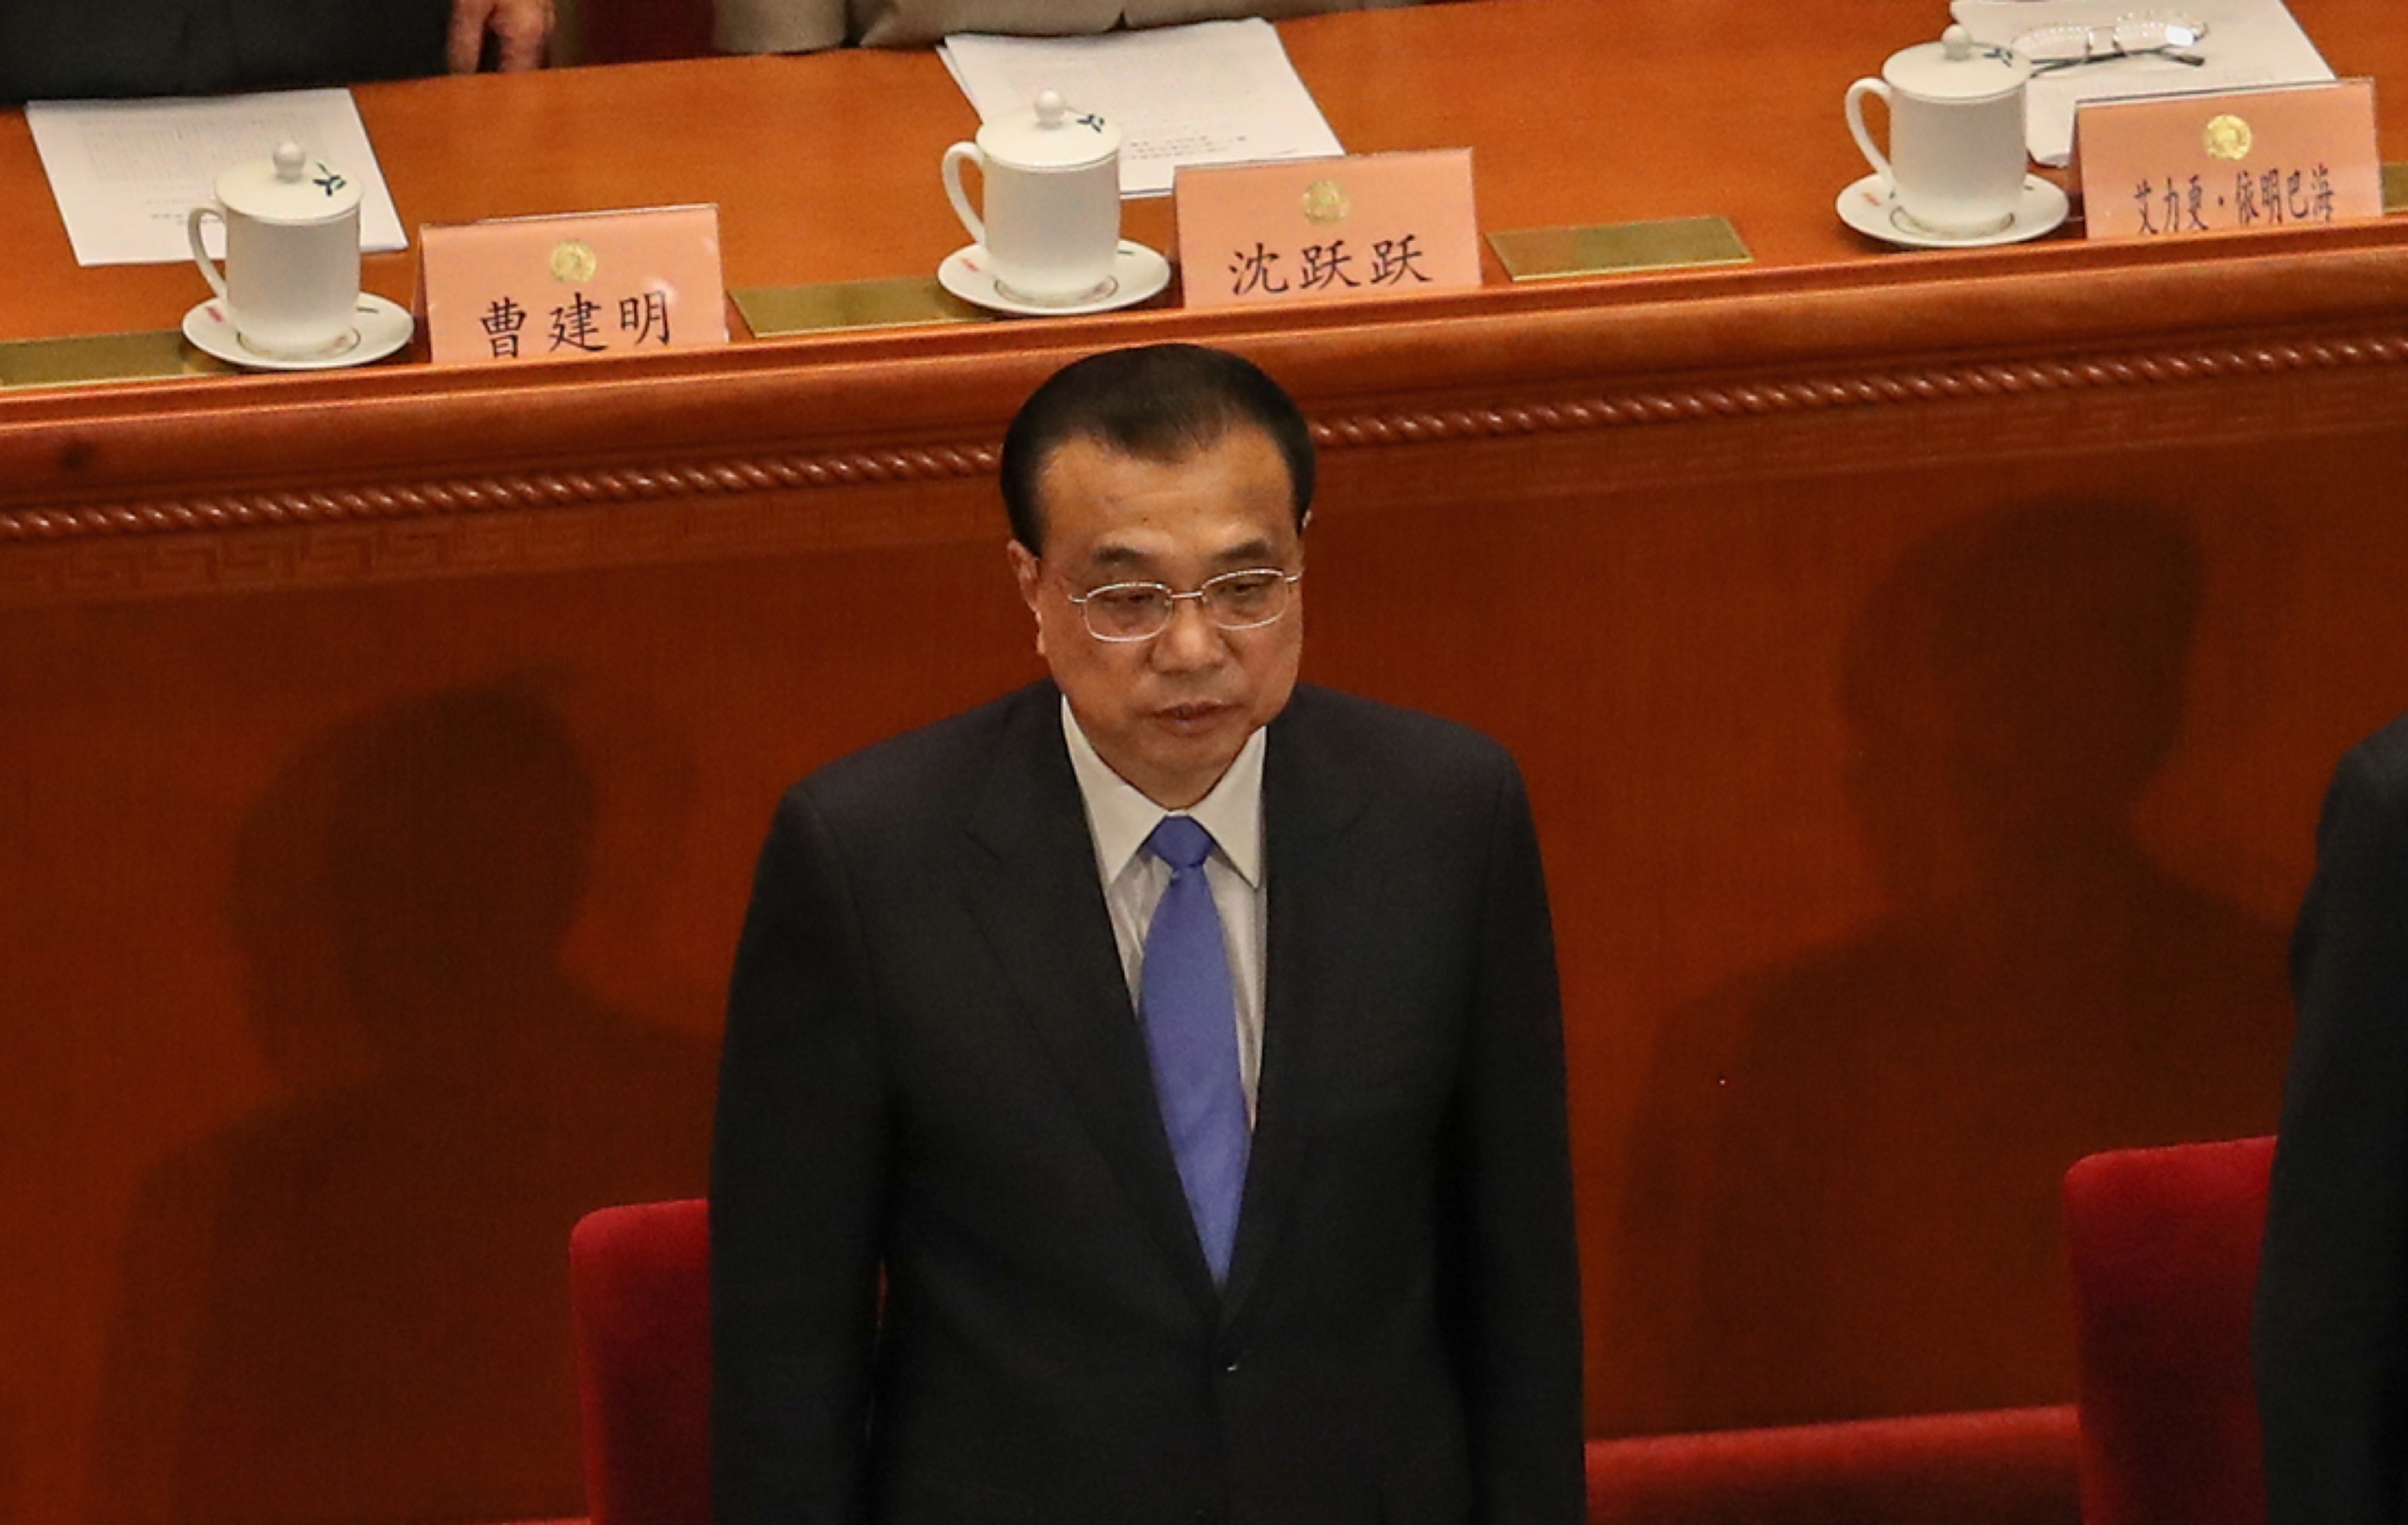 Thủ tướng Trung Quốc Lý Khắc Cường trong phiên bế mạc hội nghị cơ quan lập pháp bù nhìn của Trung Quốc tại Bắc Kinh, Trung Quốc, vào ngày 27/05/2020. (Ảnh: Andrea Verdelli/Getty Images)